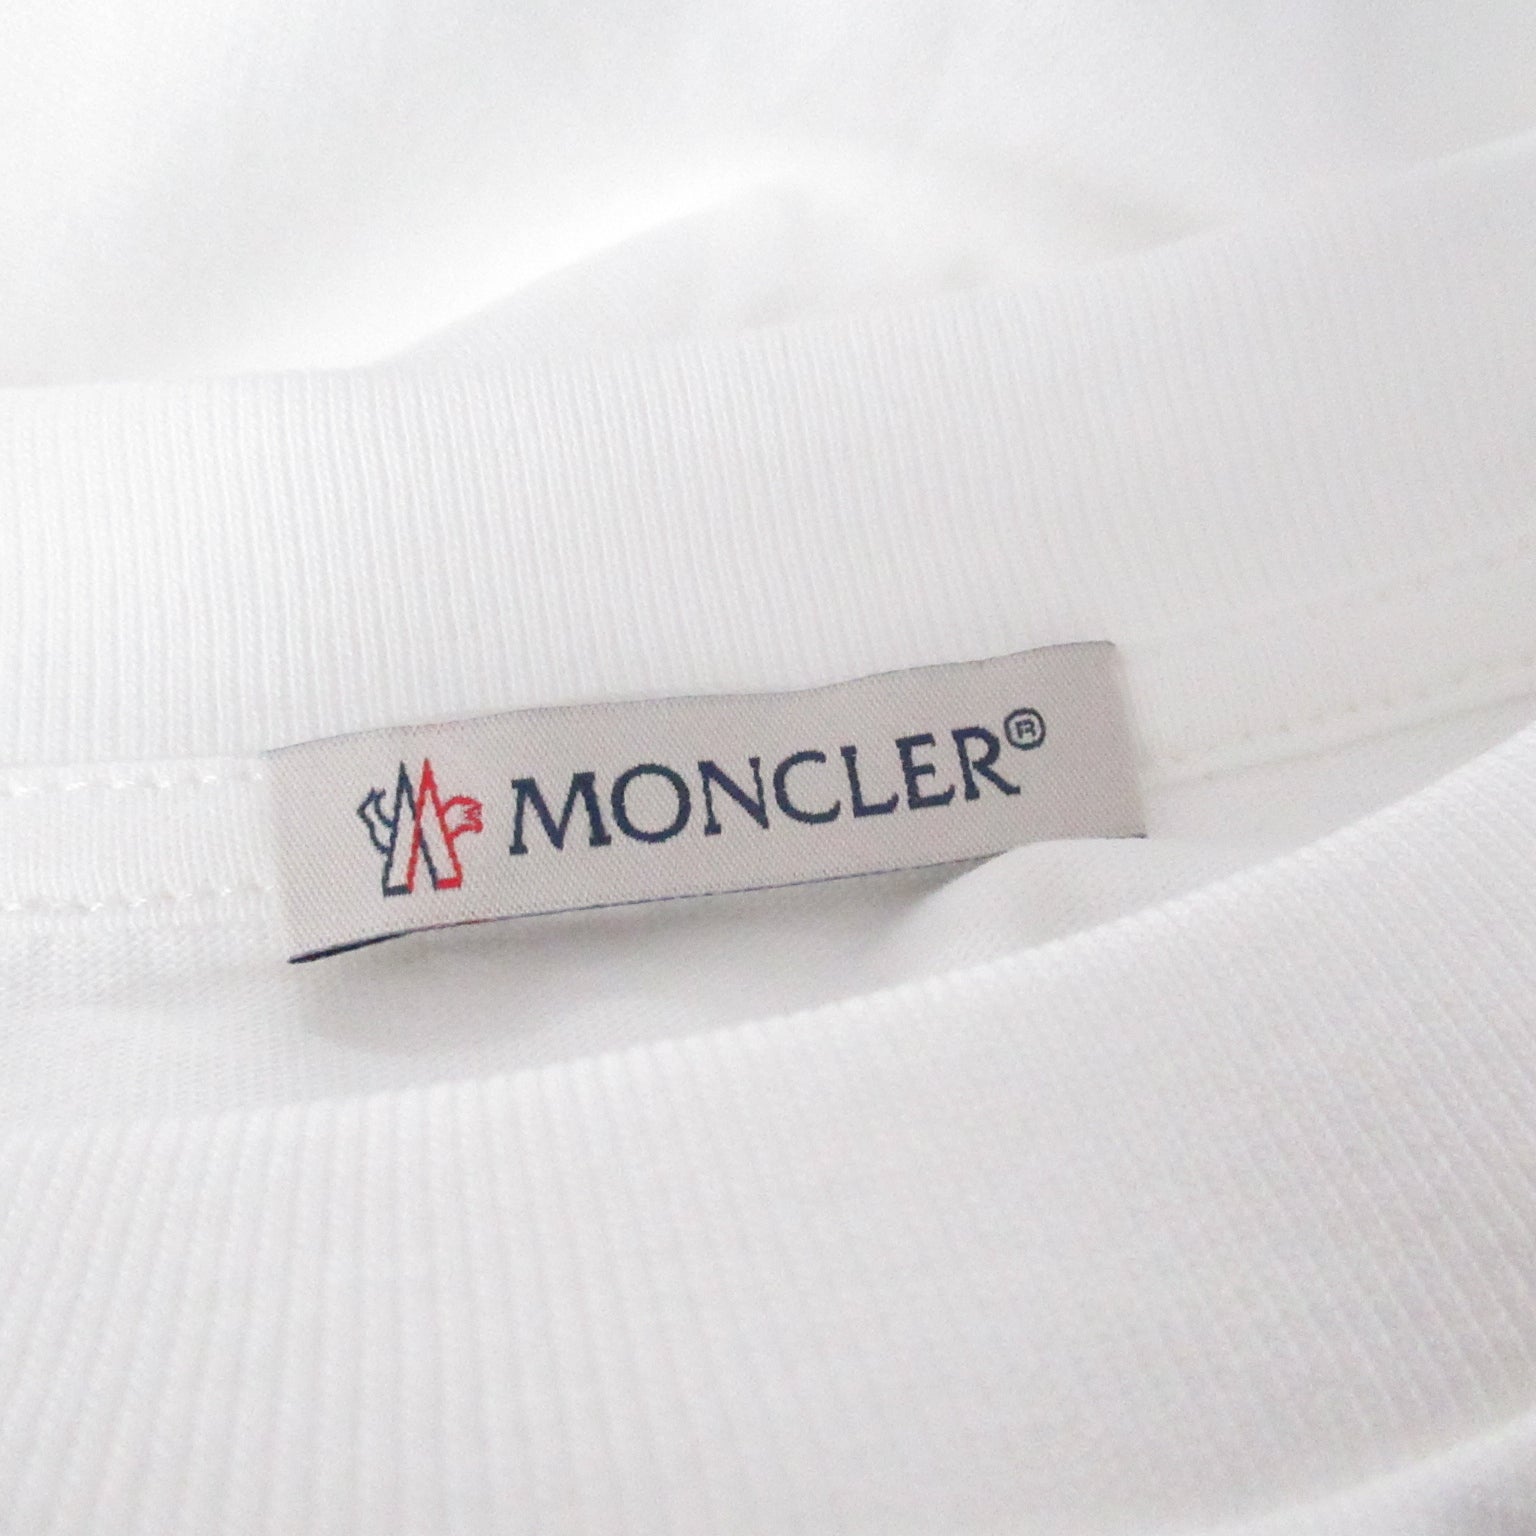 Moncler MONCLER  Half-Hand   Tops Cotton  White 8C00006829HP037L